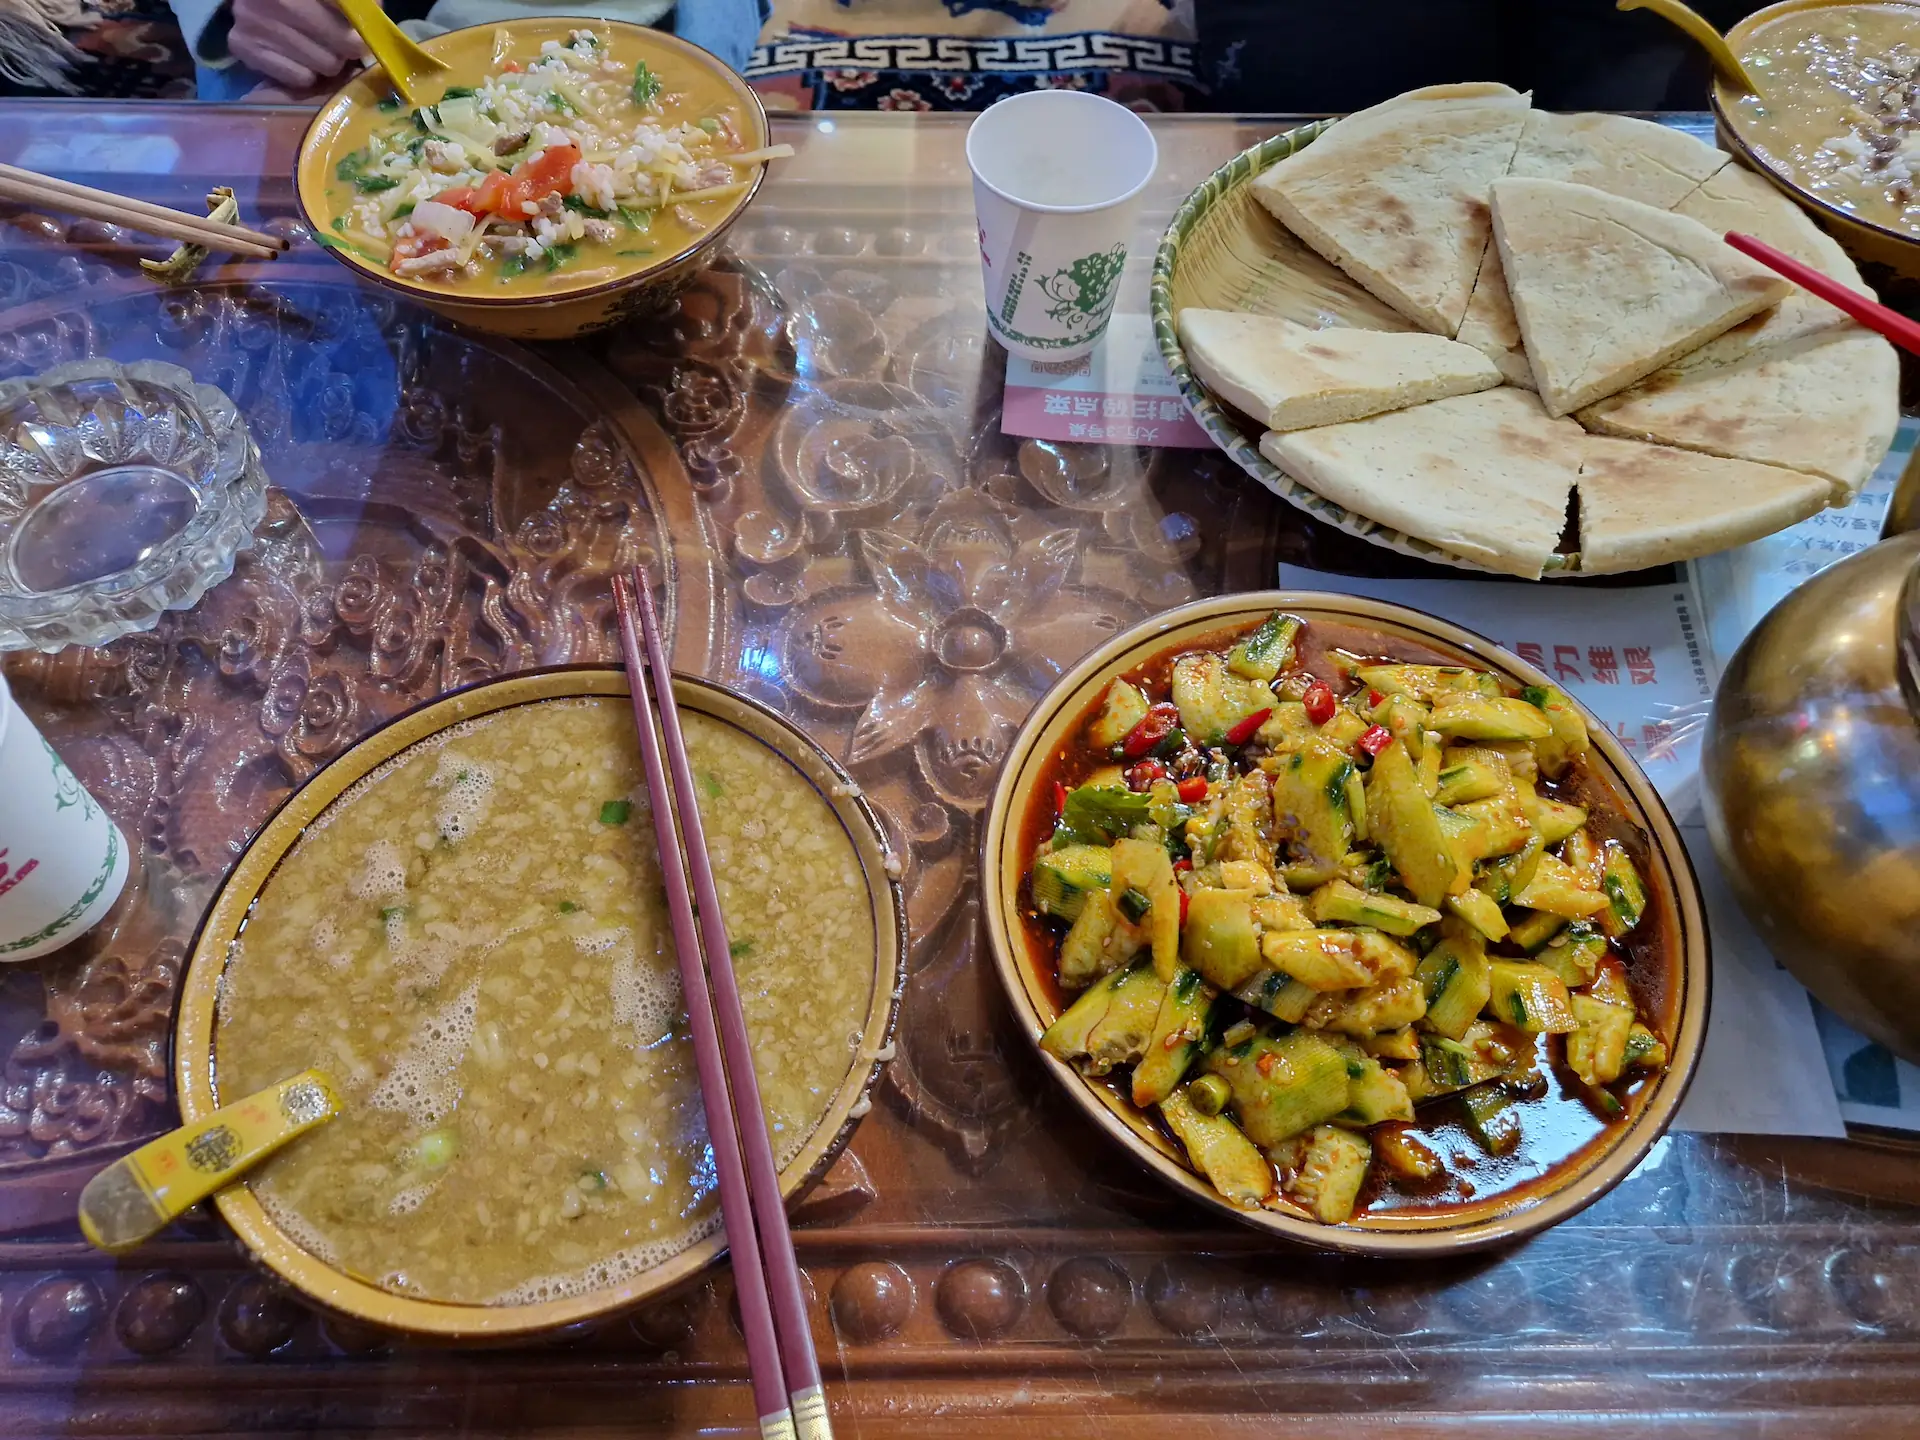 Repas tibétain : soupe de beurre pour Robin, porridge pour Clara, galette et salade de concombres au piment à partager.